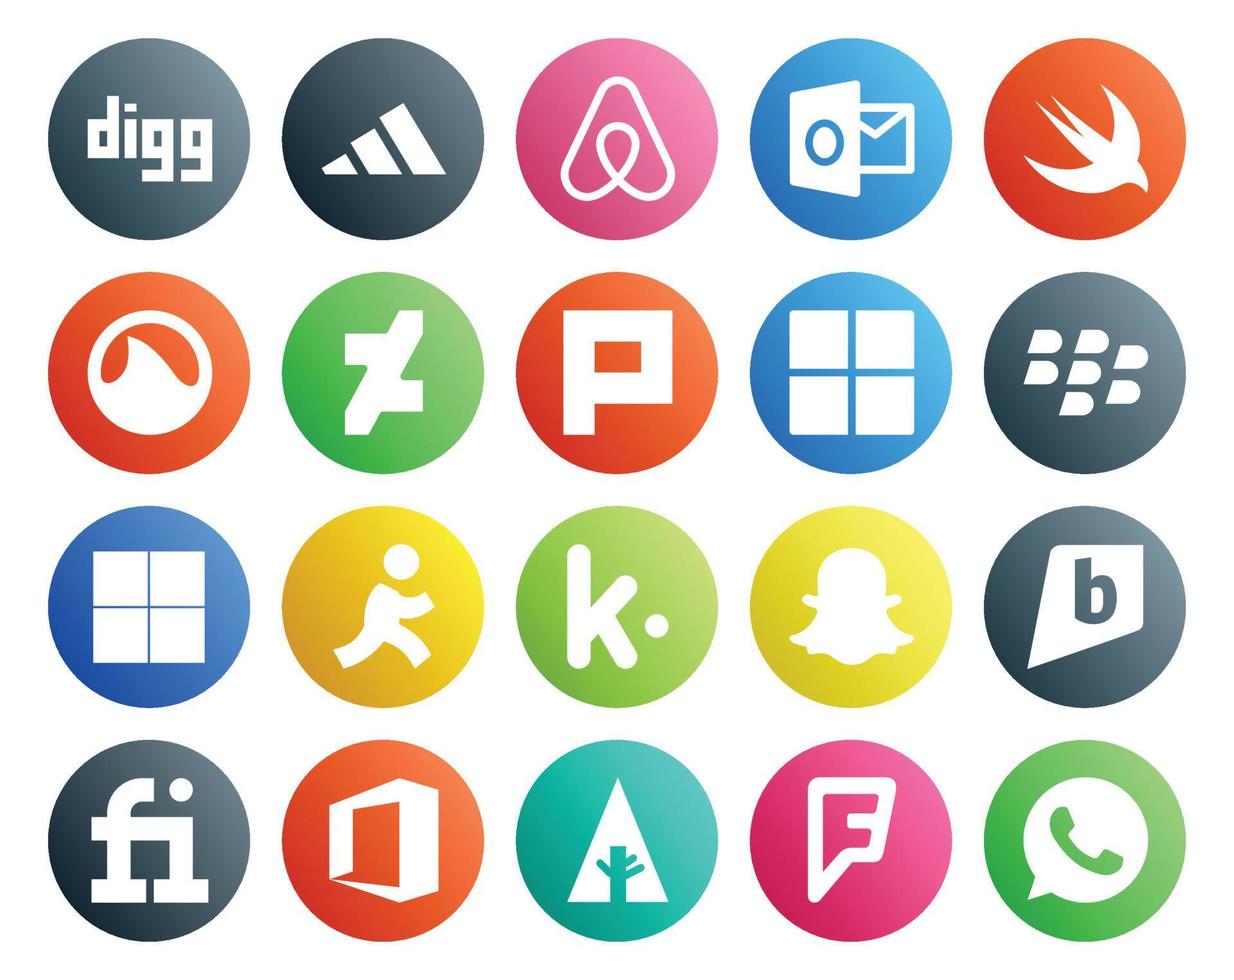 20 Social Media Icon Pack Including forrst fiverr microsoft brightkite kik vector